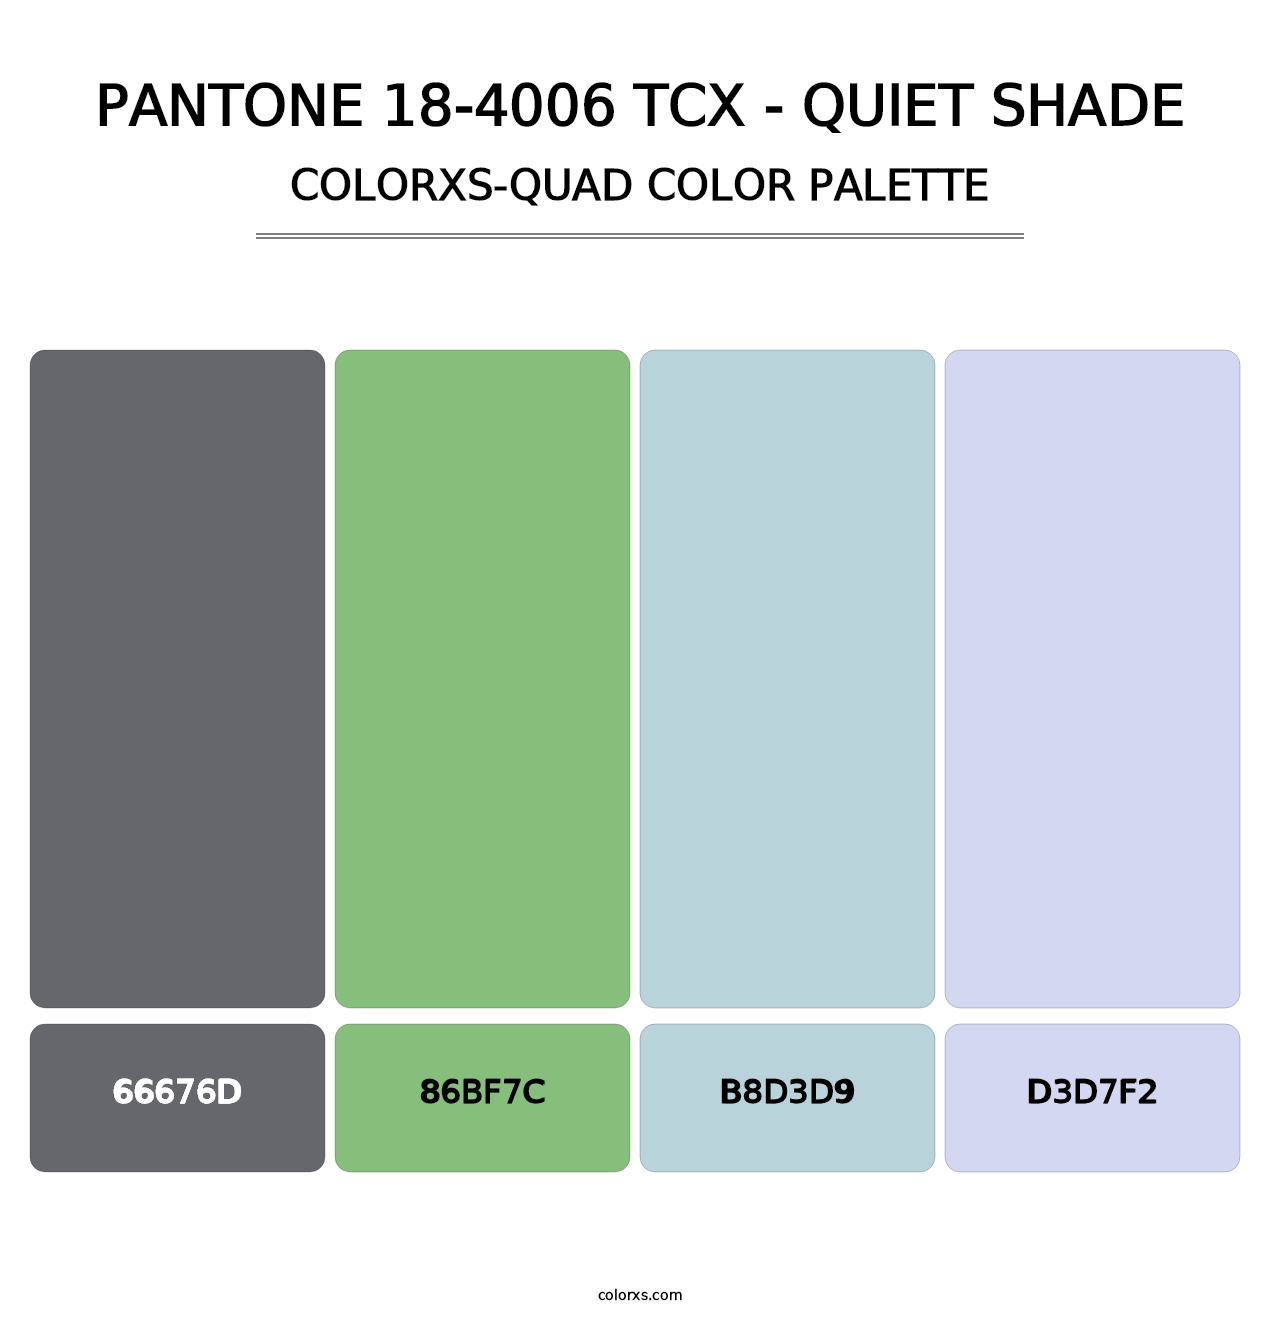 PANTONE 18-4006 TCX - Quiet Shade - Colorxs Quad Palette